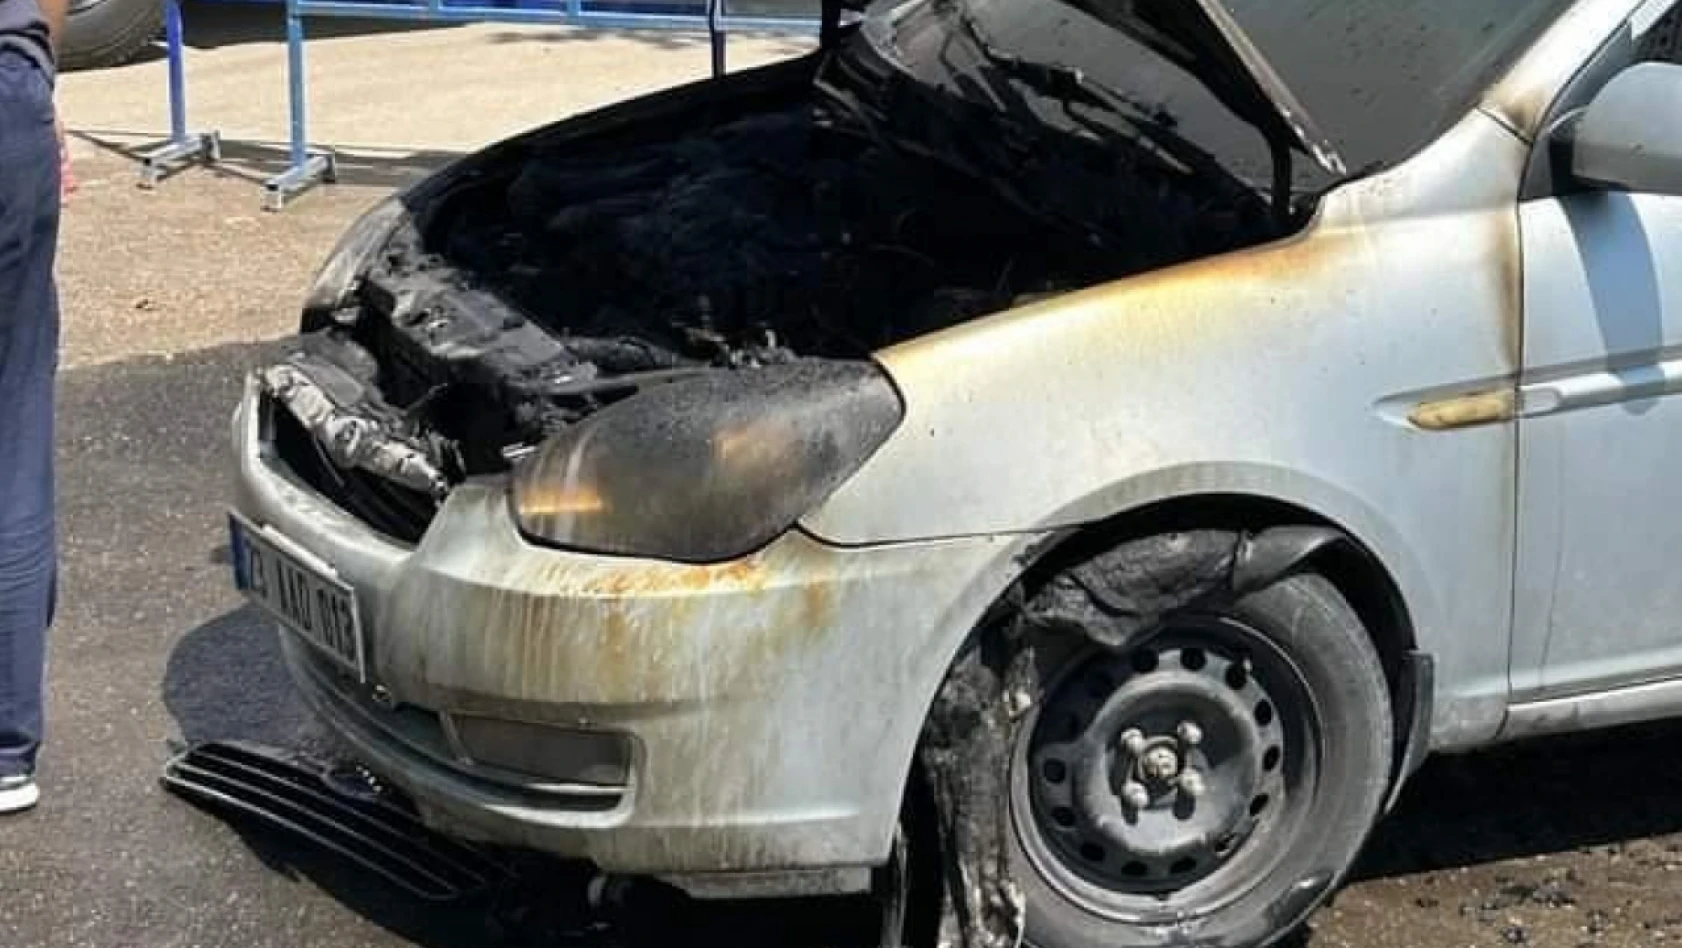 Elazığ'da seyir halindeki araç yandı